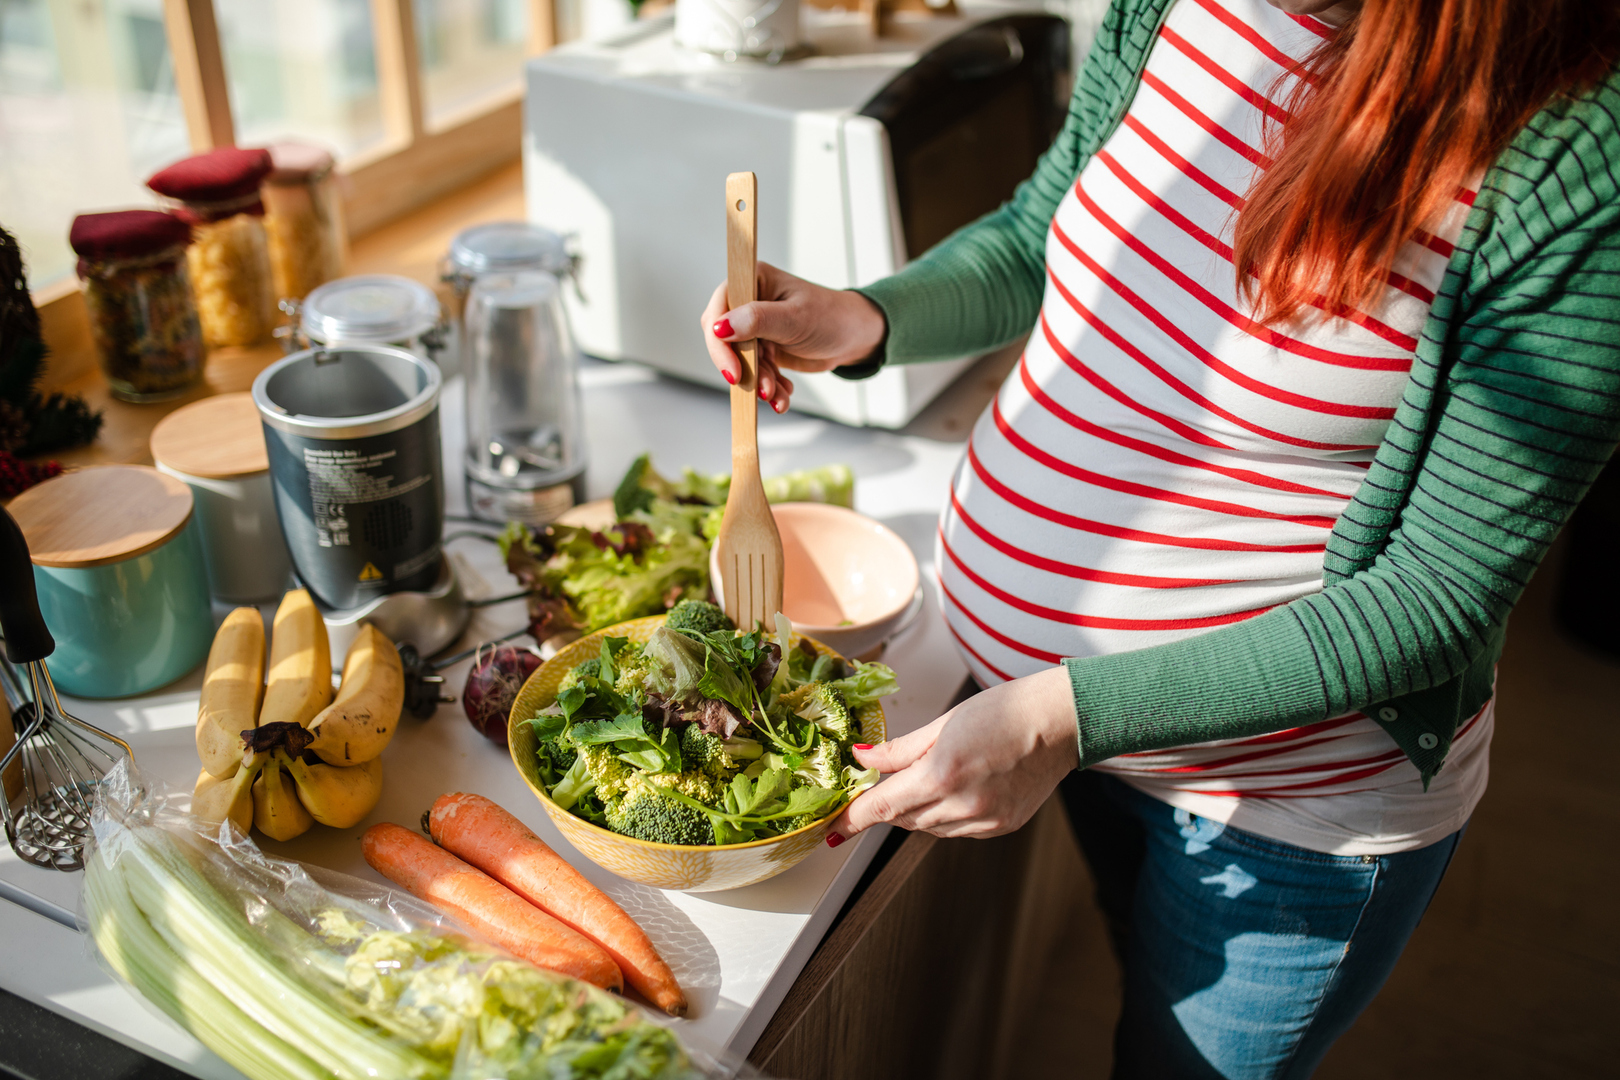 النظام الغذائي النباتي يمكن أن يهدد صحة الحوامل وأطفالهن